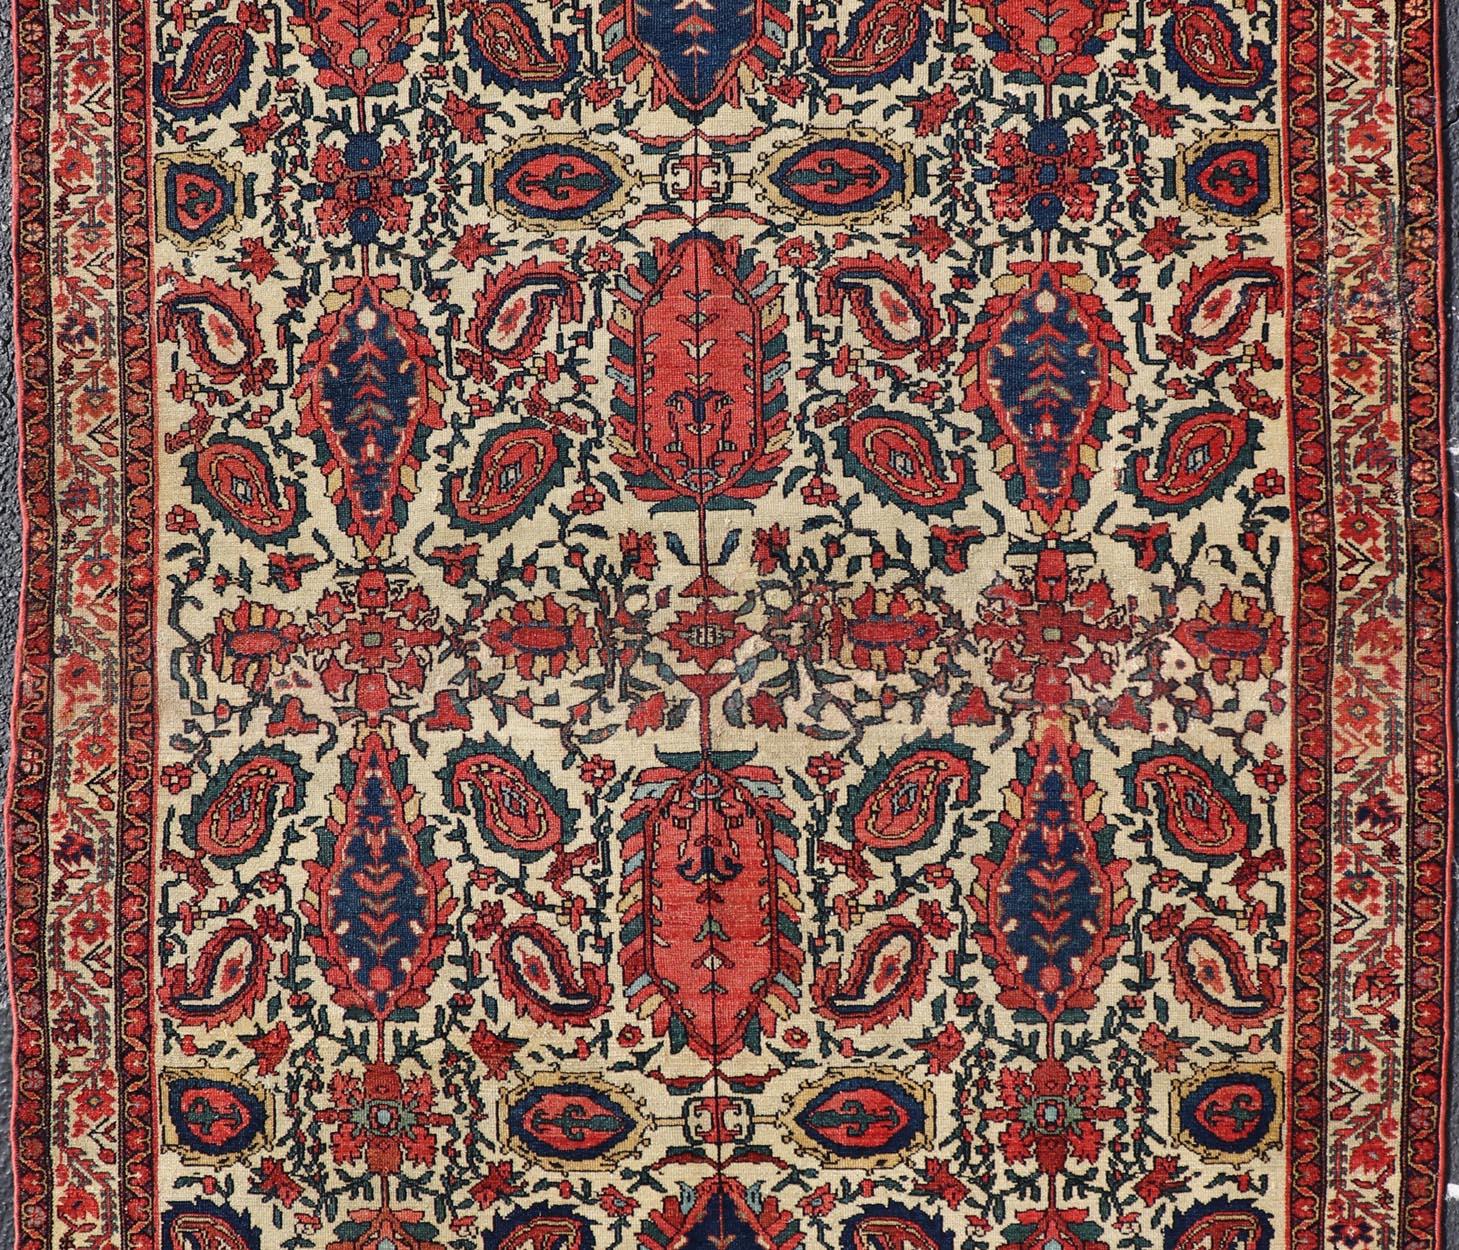 Paisley Design antiker persischer Malayer Teppich in Elfenbein, rot, blau, braun, Teppich 18-0407, Herkunftsland / Typ: Iran / Malayer, um 1900.

Dieser wunderschöne antike persische Malayer-Teppich aus dem frühen 20. Jahrhundert zeichnet sich durch